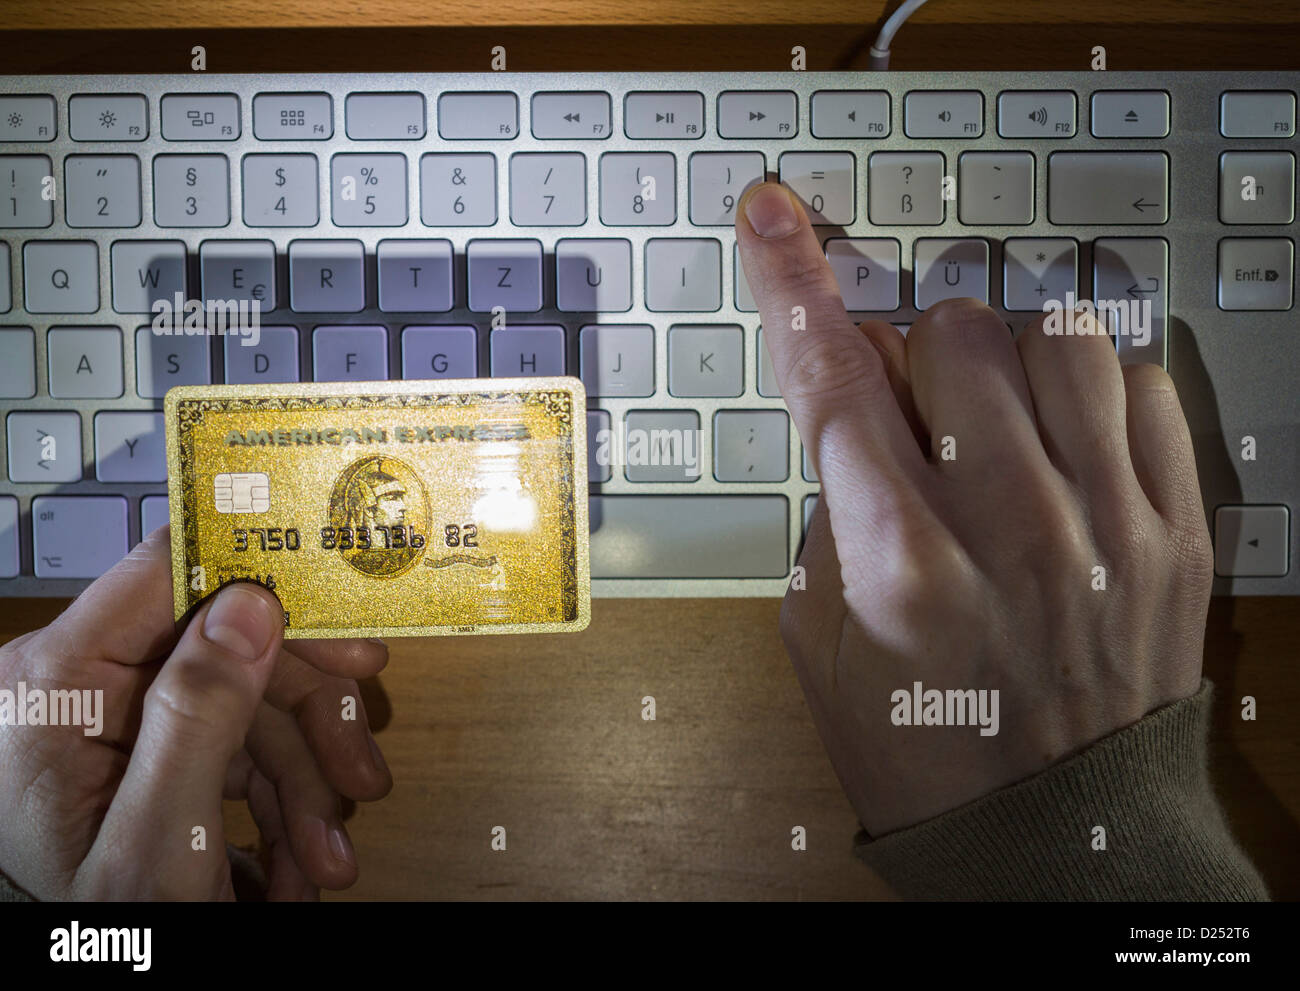 Utilisation d'une carte de crédit dans l'Internet, la saisie de numéro de carte de crédit sur le clavier d'un ordinateur. Banque D'Images